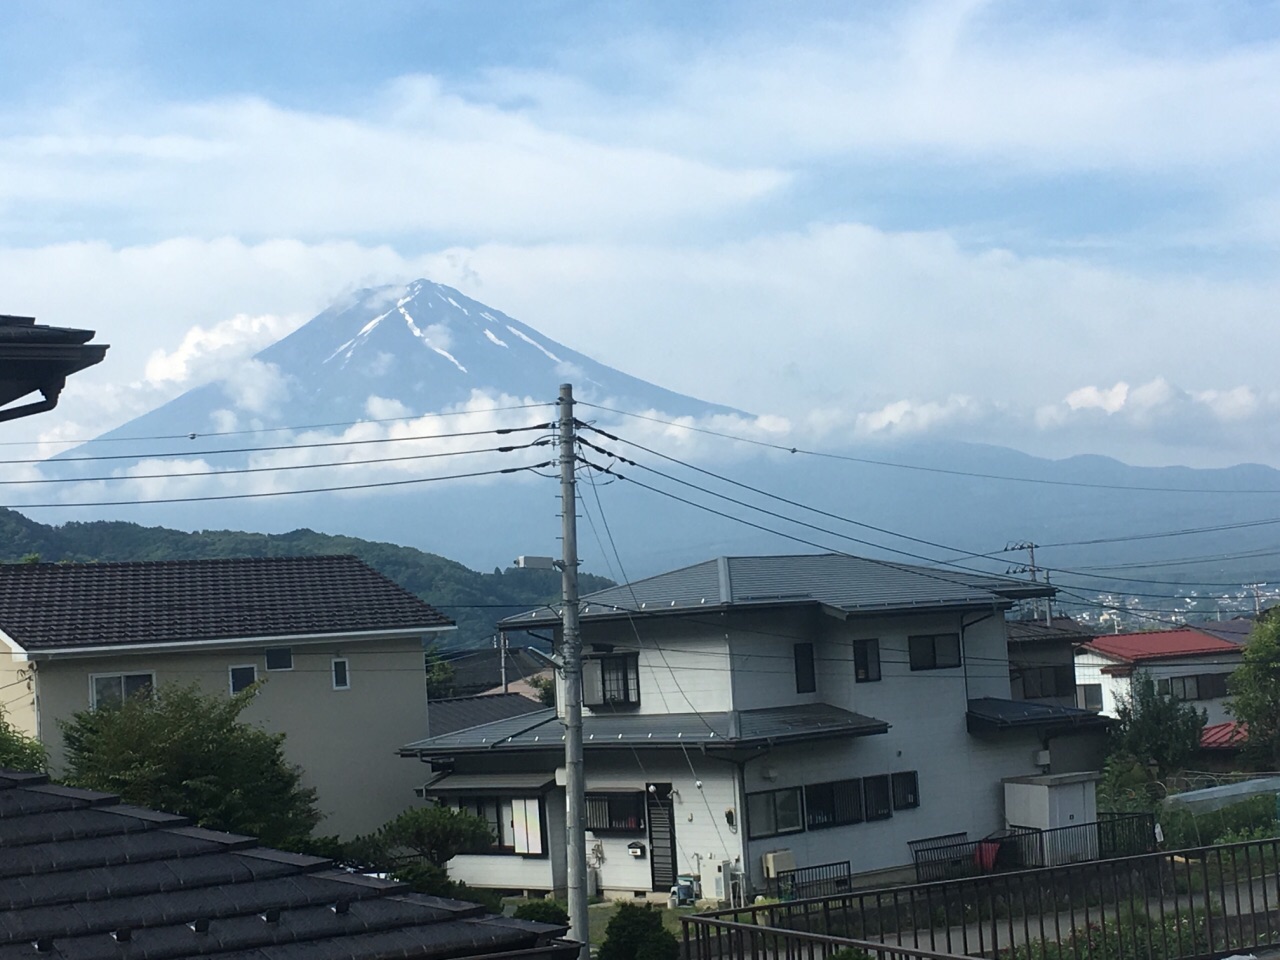 清早起床看远处的富士山